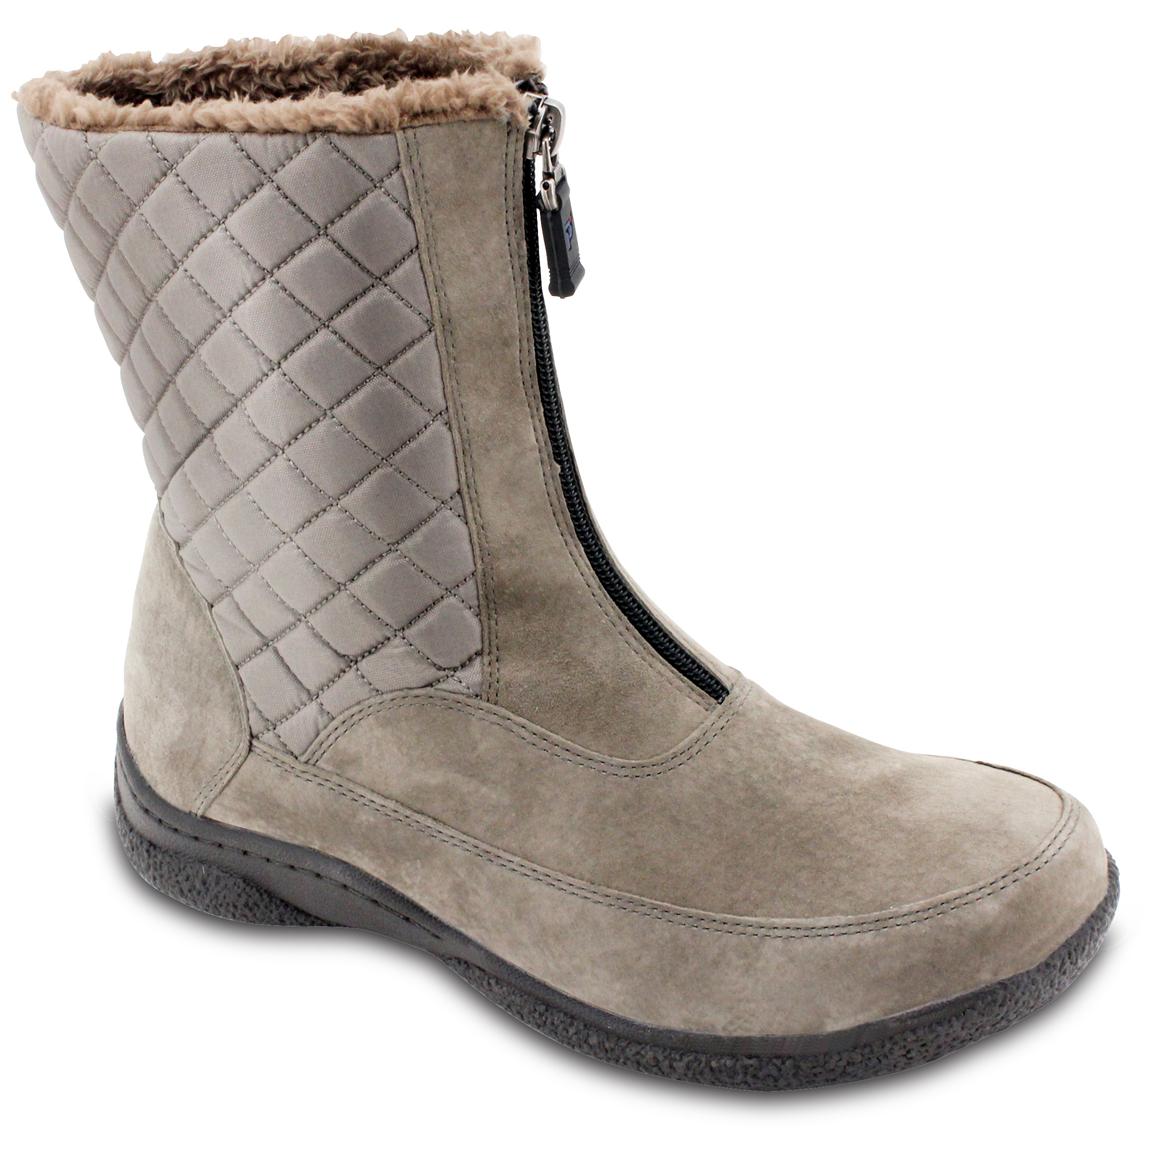 Women's Propet Alta Mid Zip Walking Boots - 282821, Winter & Snow Boots ...